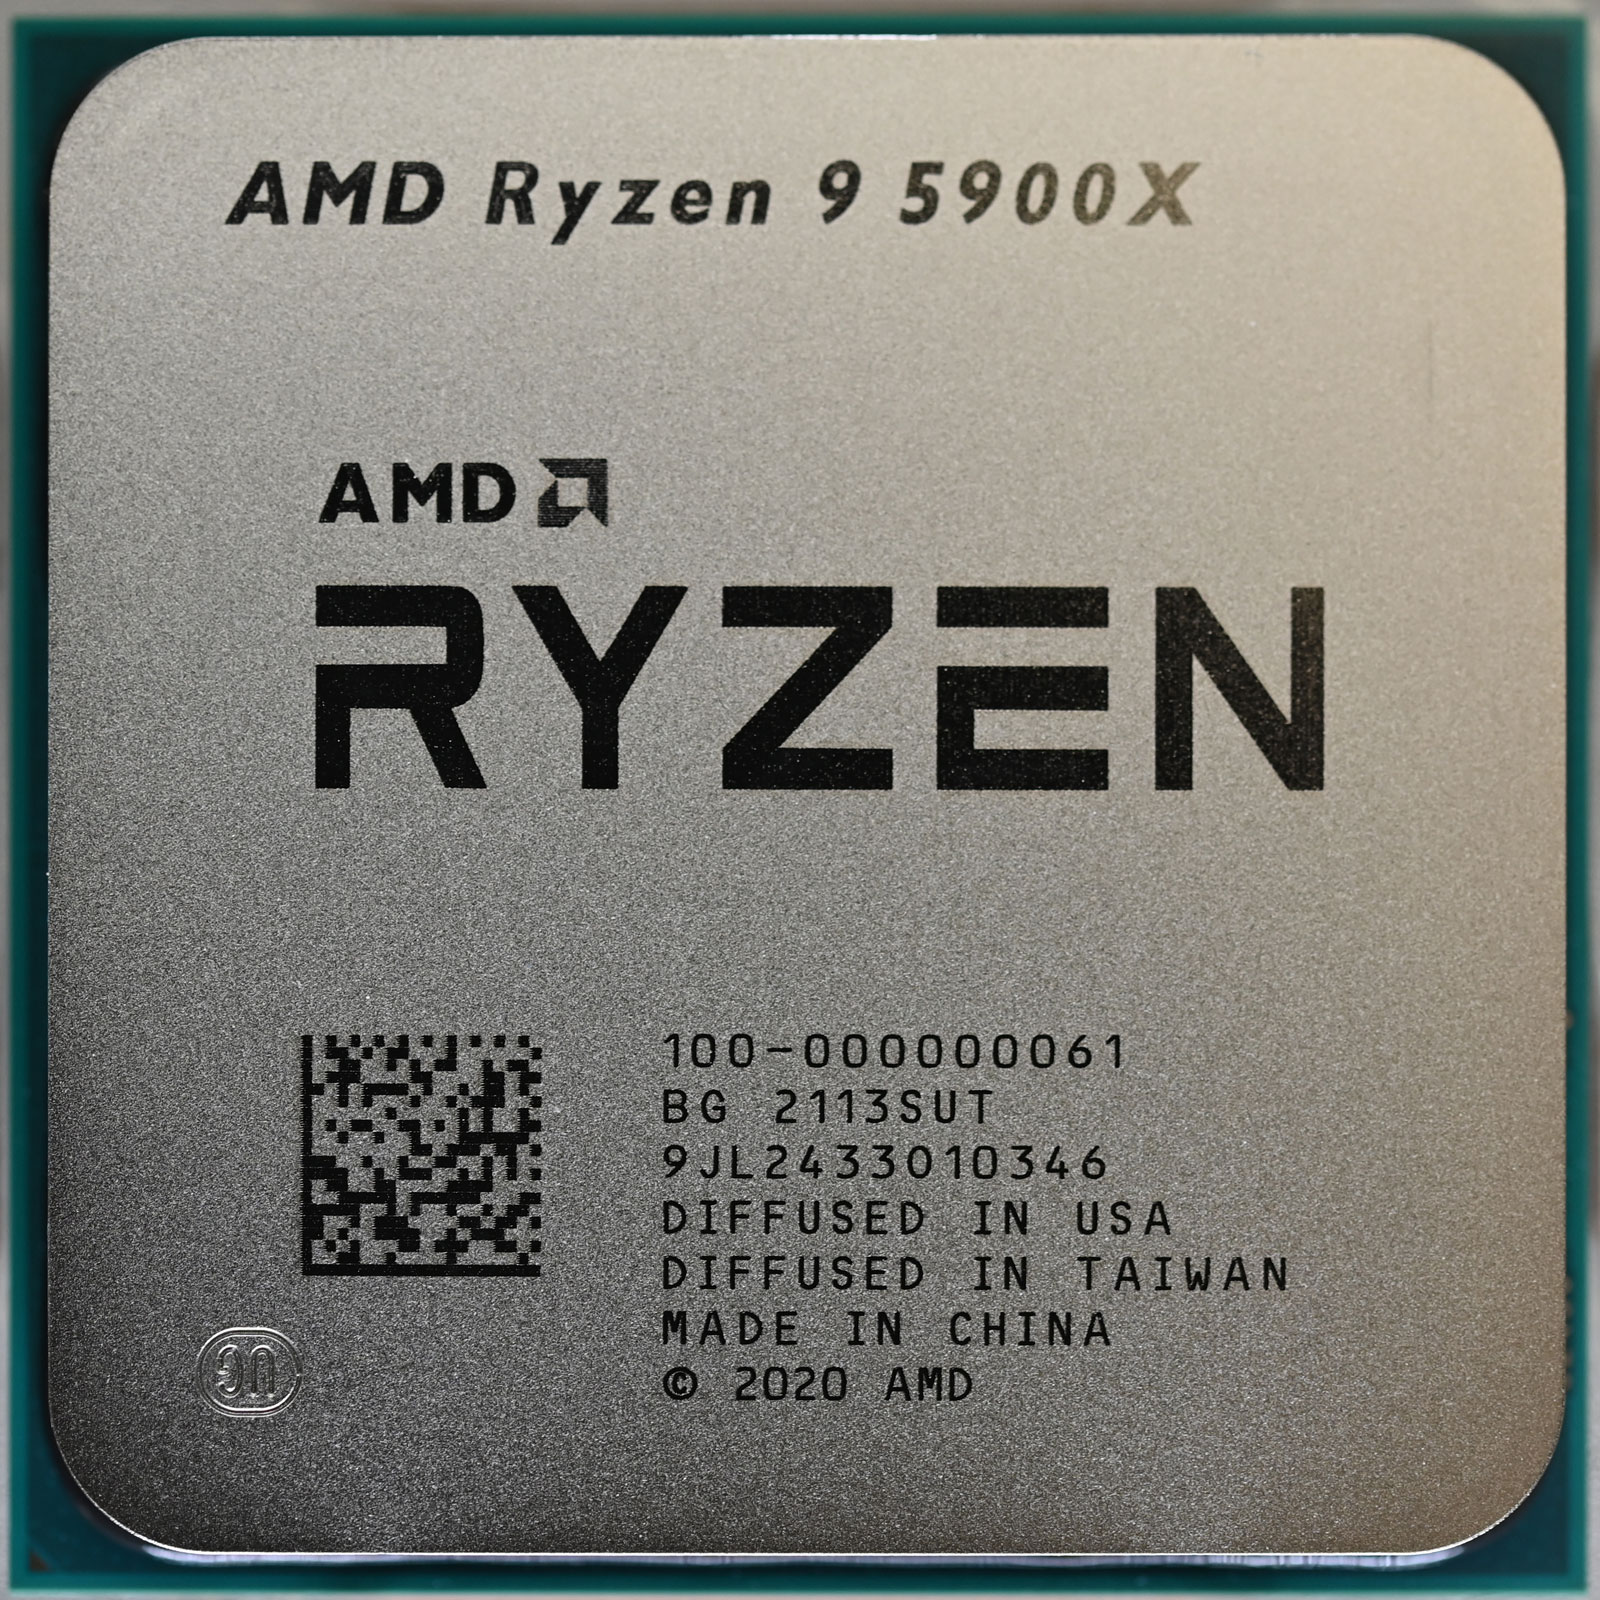 実質 53,076円で安い!AMD Ryzen 9 5900X。4000MHzも安定動作 - PCまなぶ